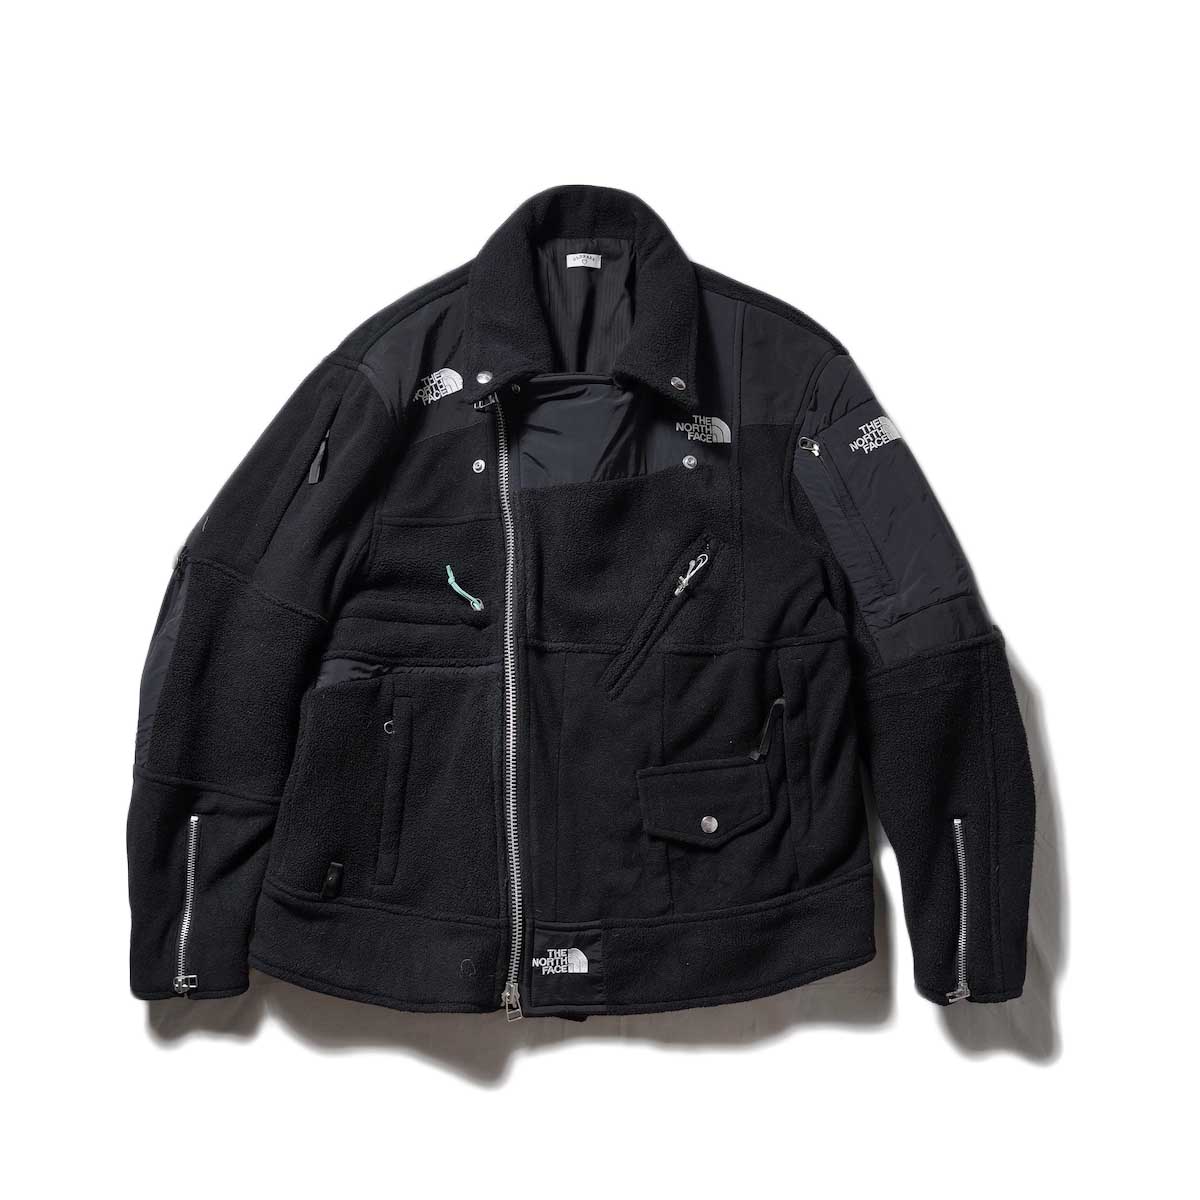 OLD PARK / Oversized Riders Jacket -Outdoor (Black)zip閉じた場合